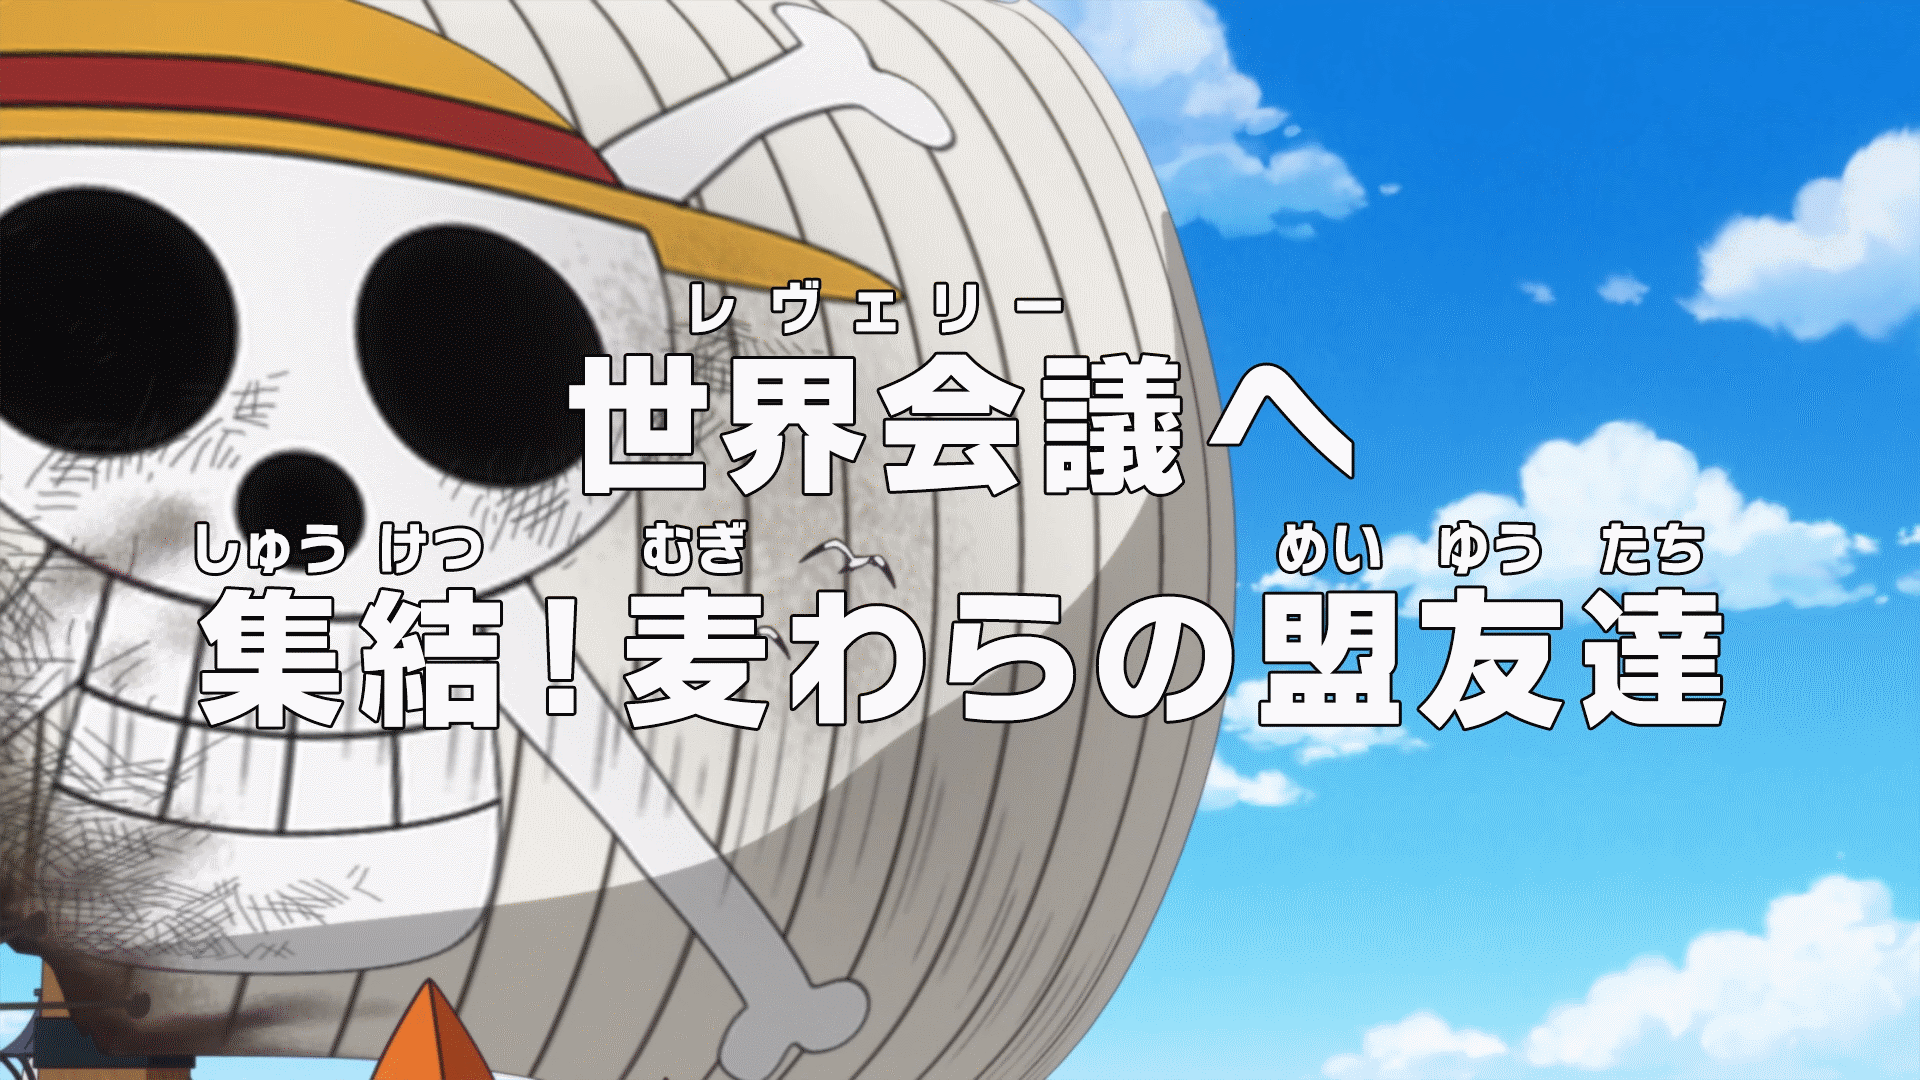 Episode 879 One Piece Wiki Fandom